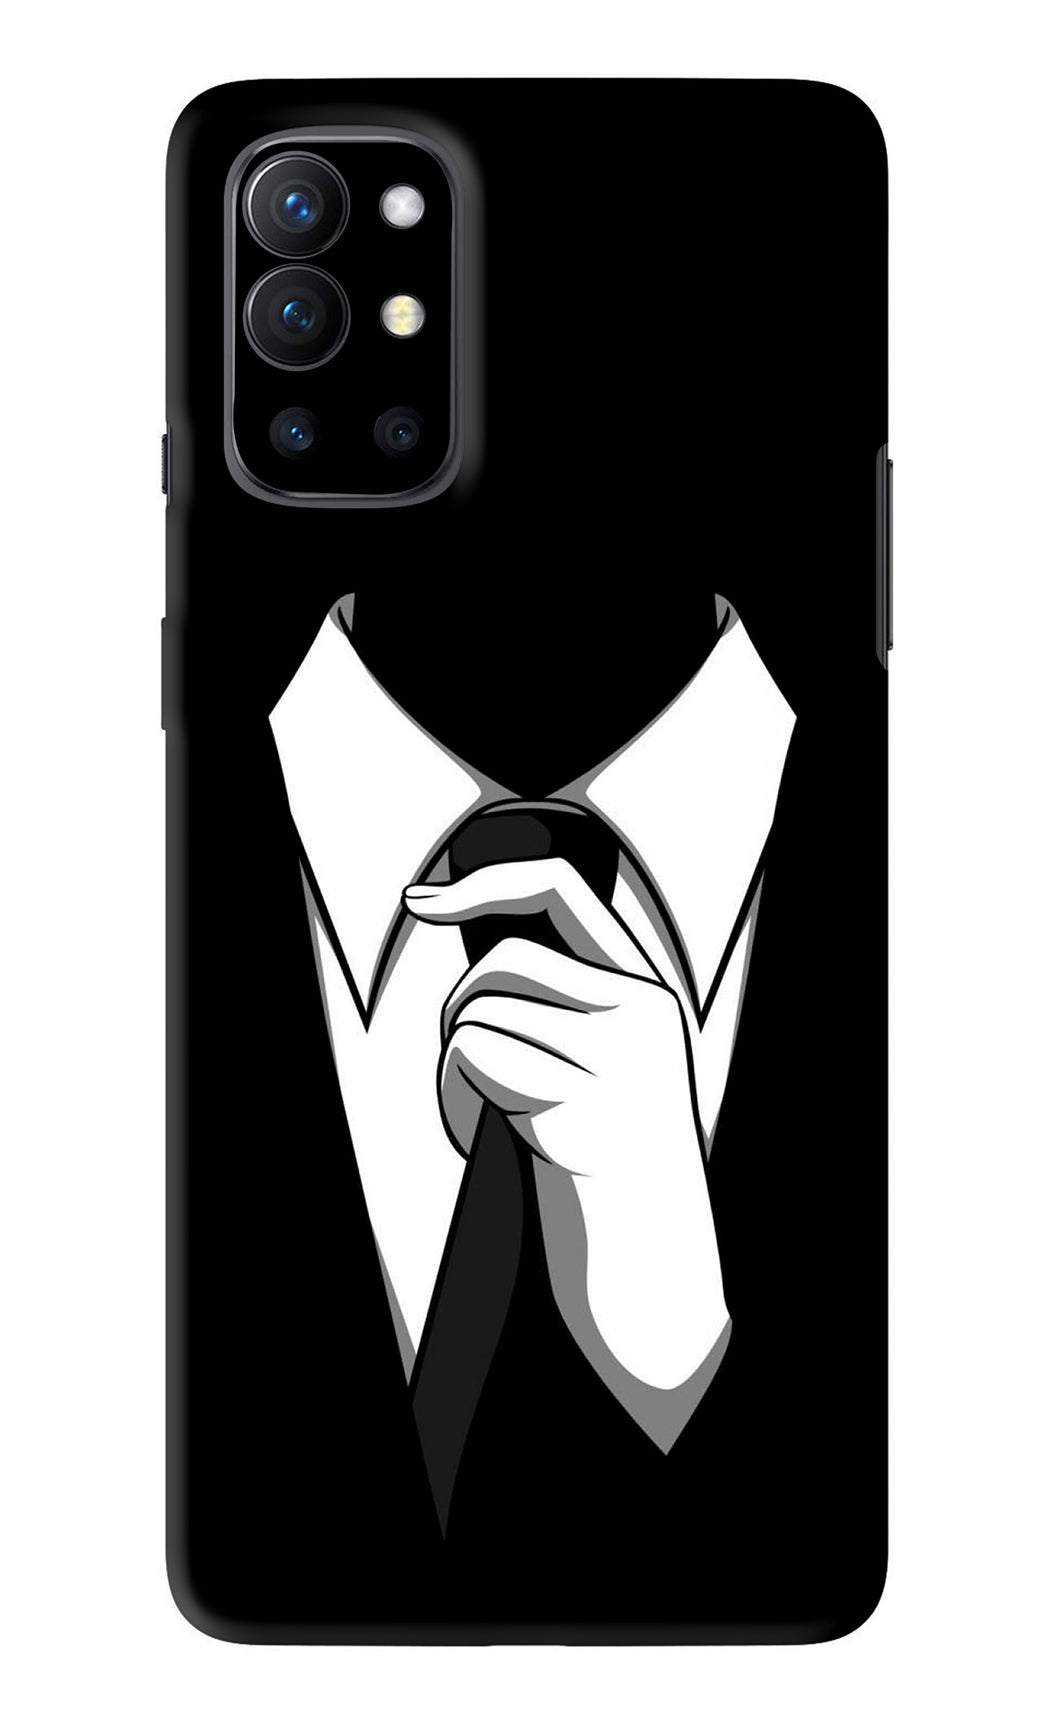 Black Tie OnePlus 9R Back Skin Wrap